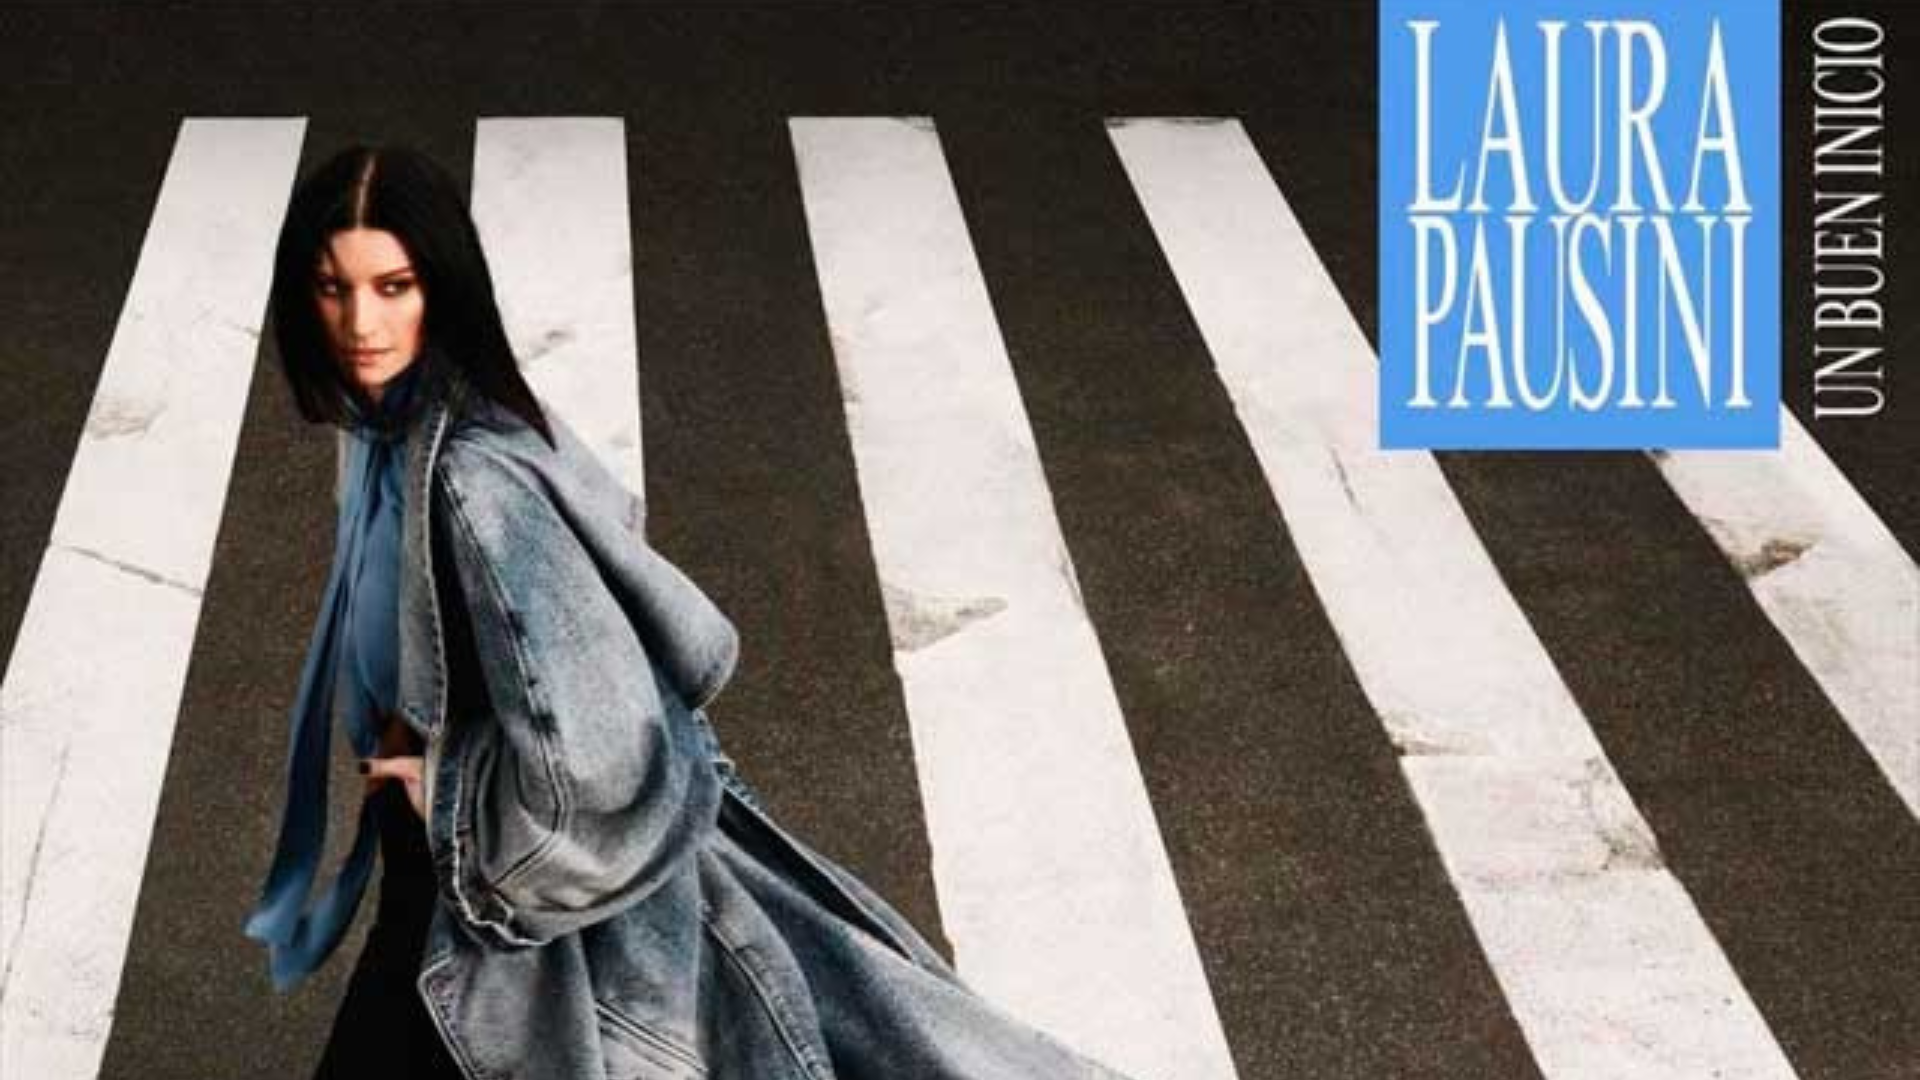 Laura Pausini estrenará su nuevo single el 10 de marzo